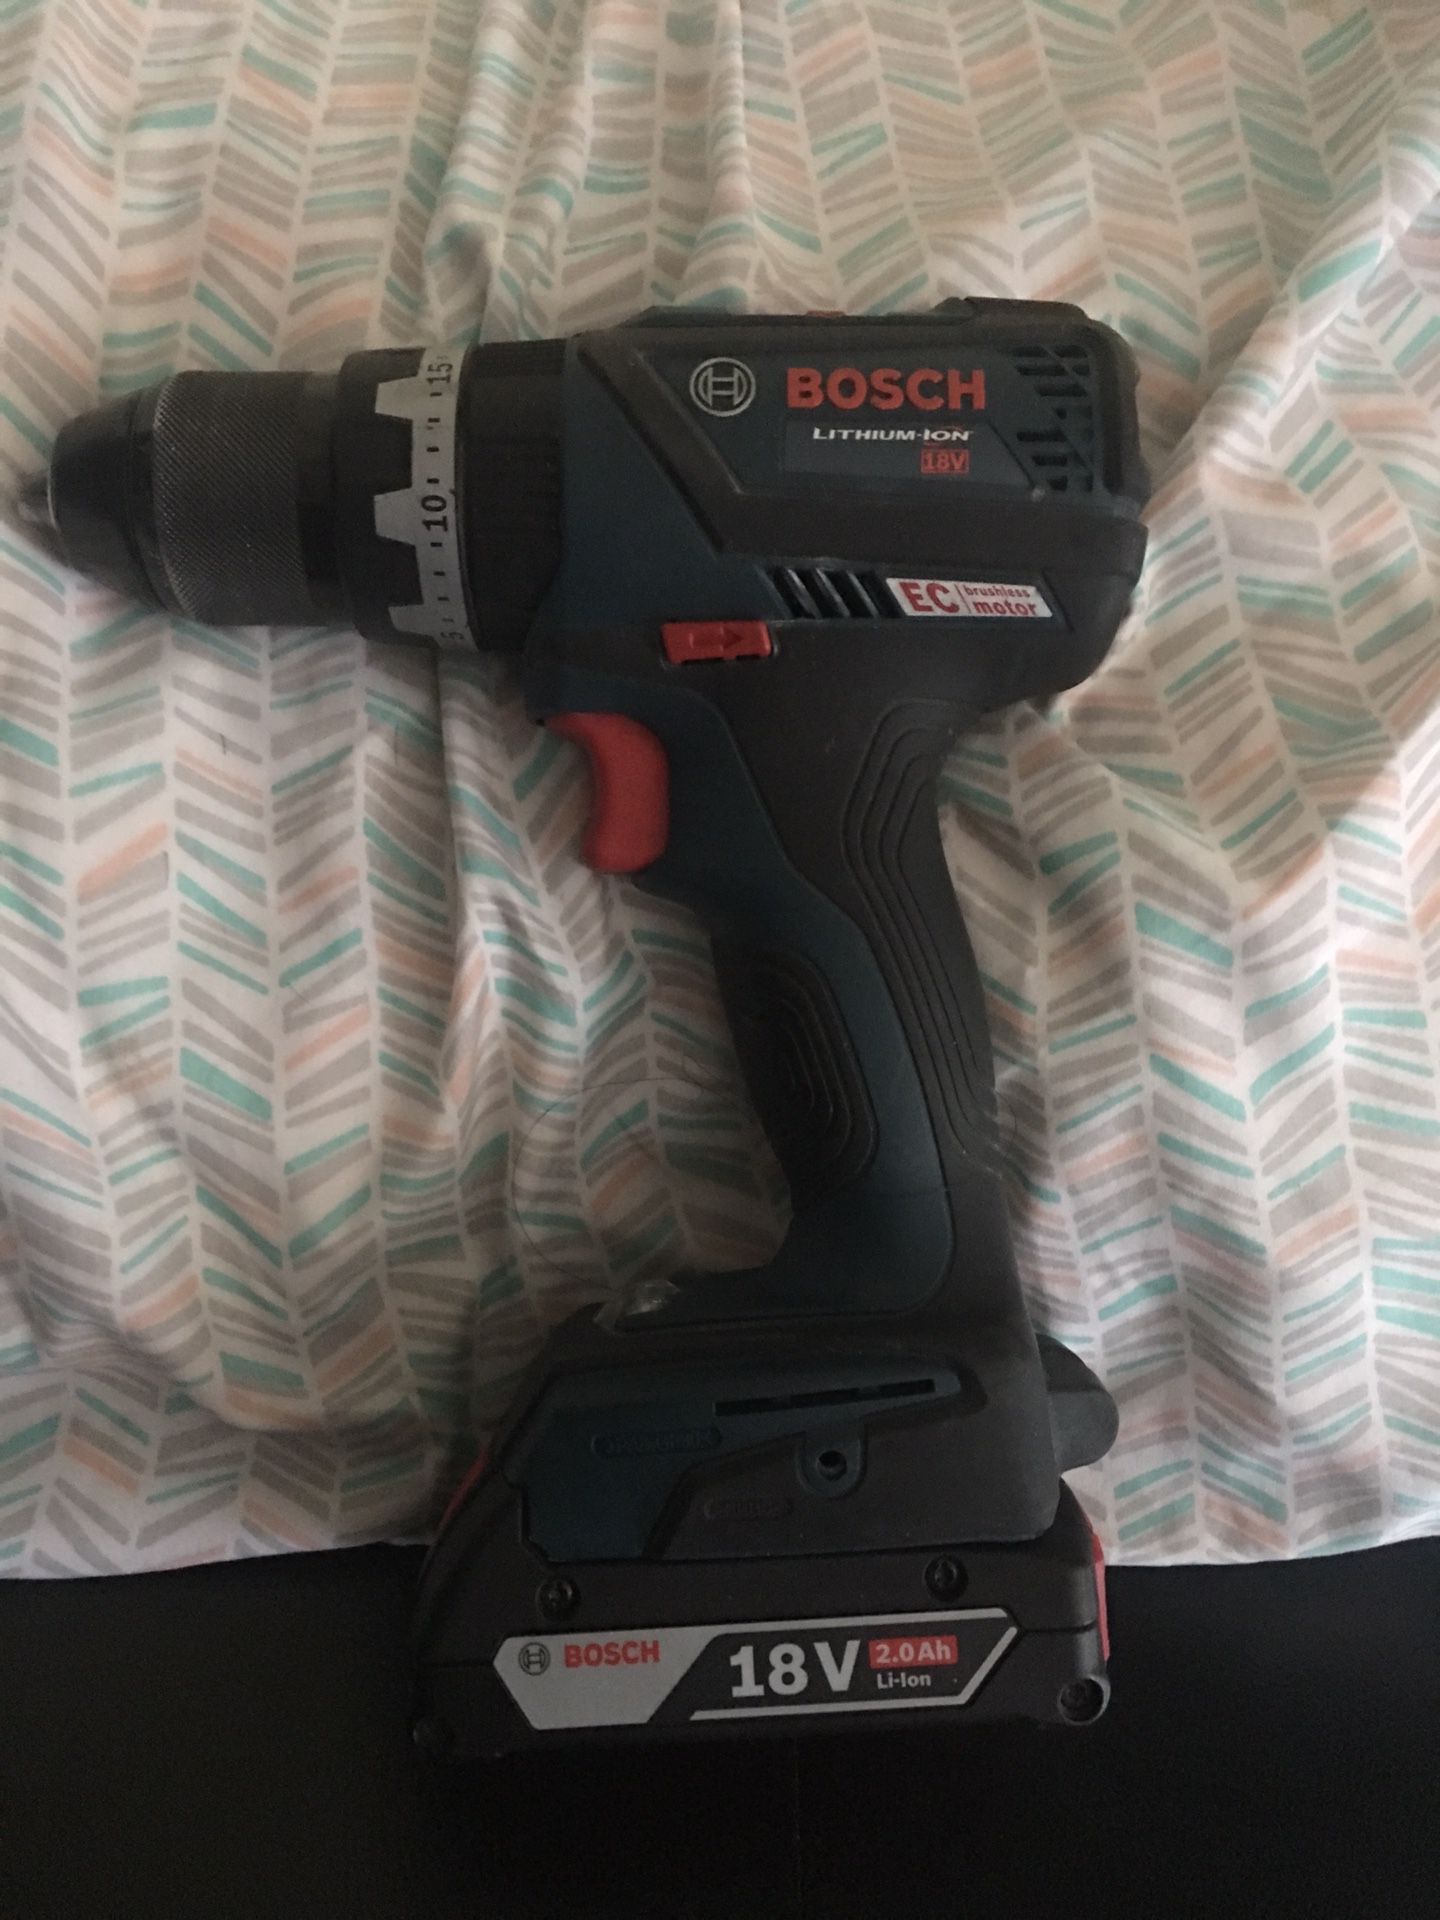 Bosch 18 V drill